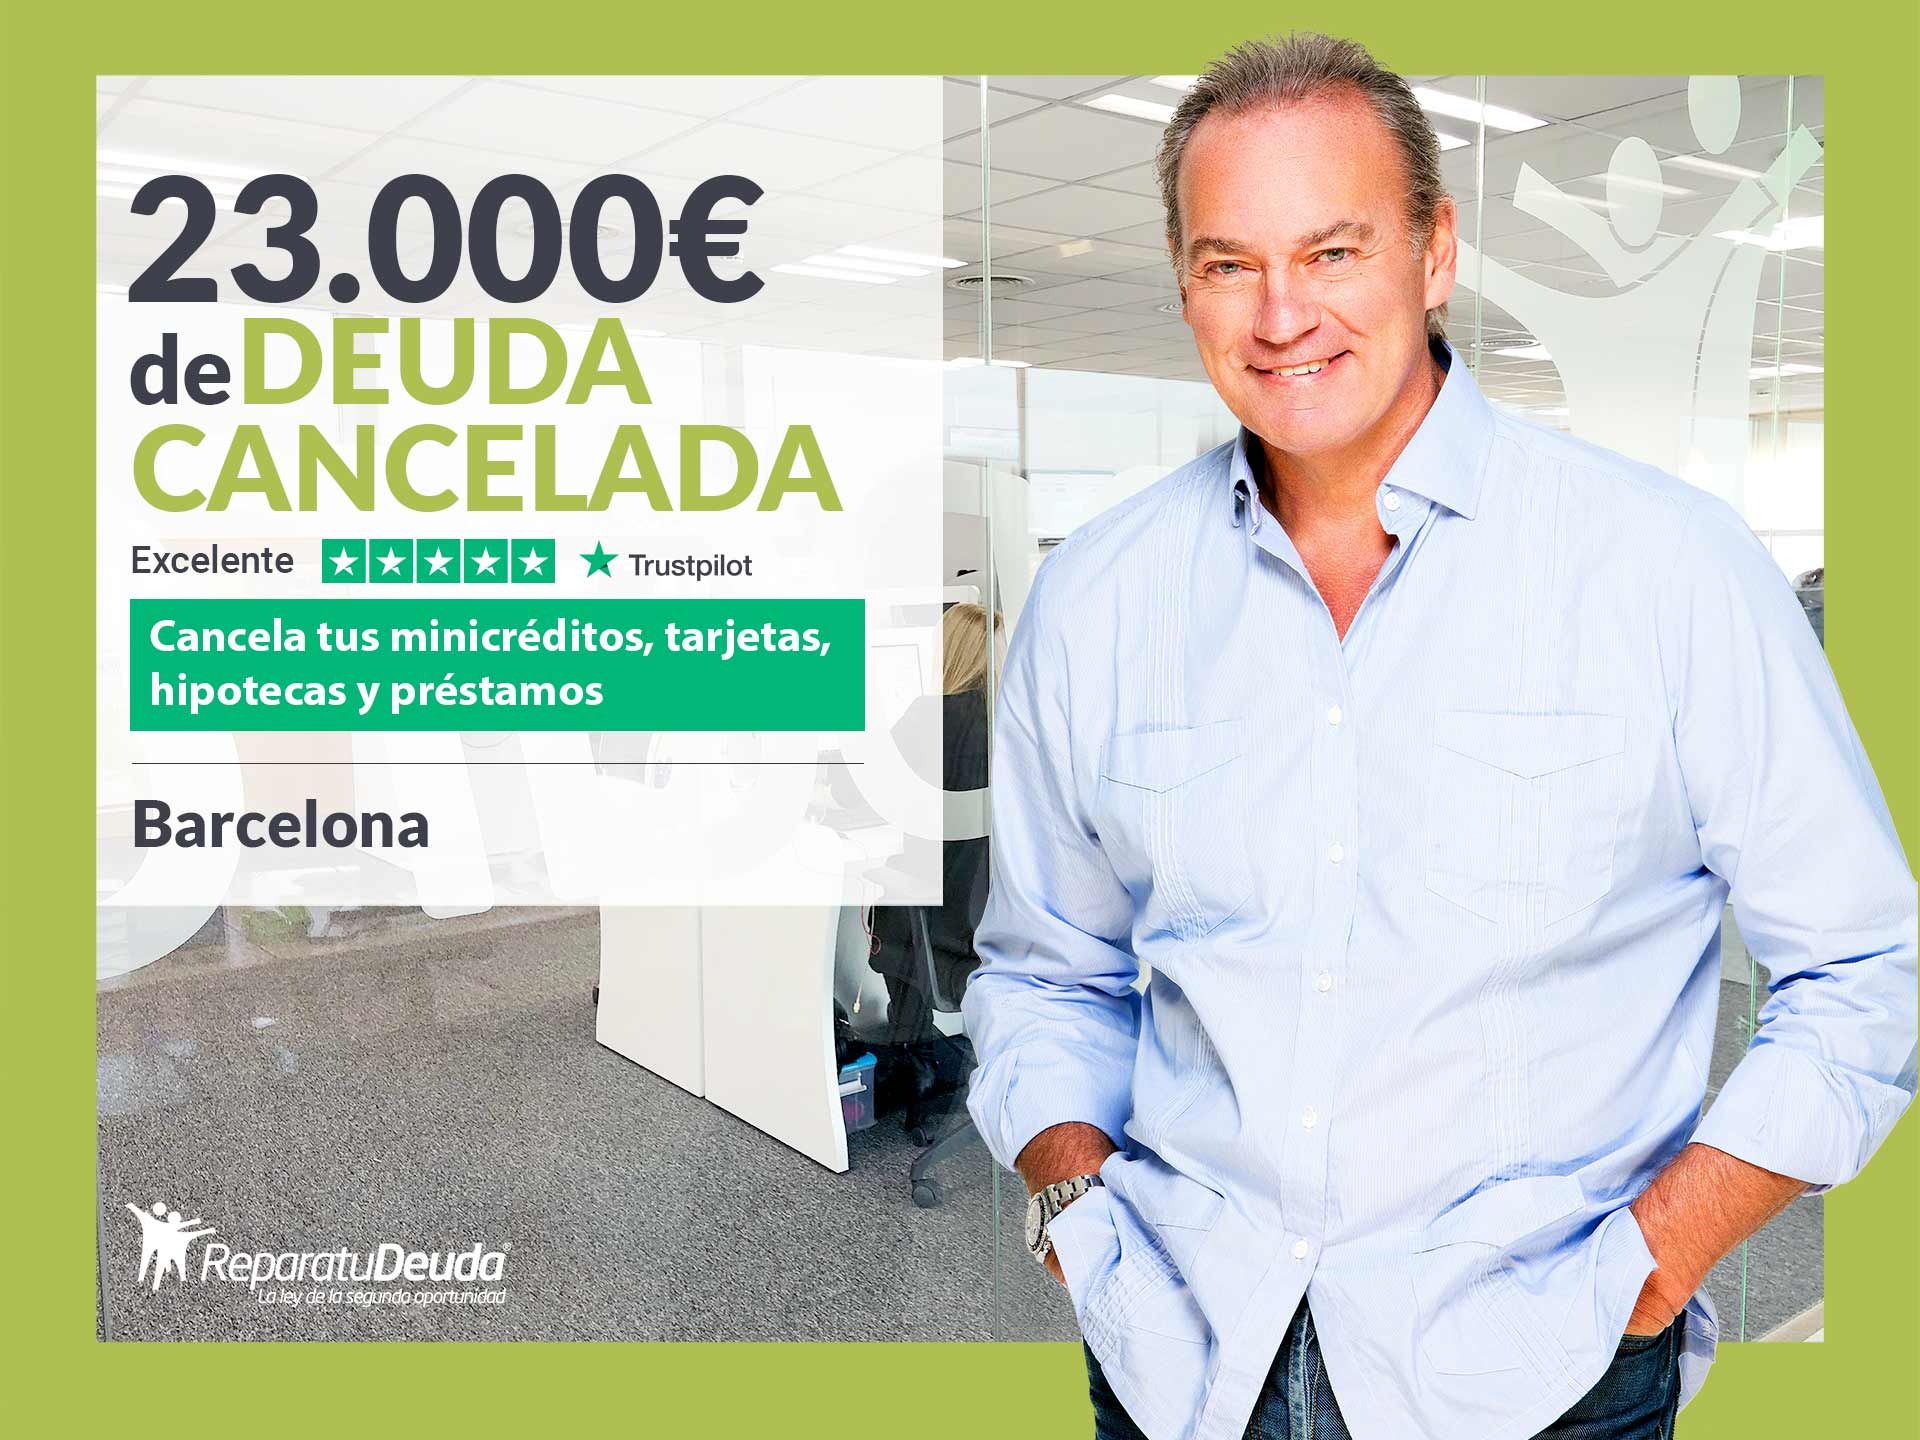 Repara tu Deuda Abogados cancela 23.000? en Barcelona (Catalunya) con la Ley de la Segunda Oportunidad